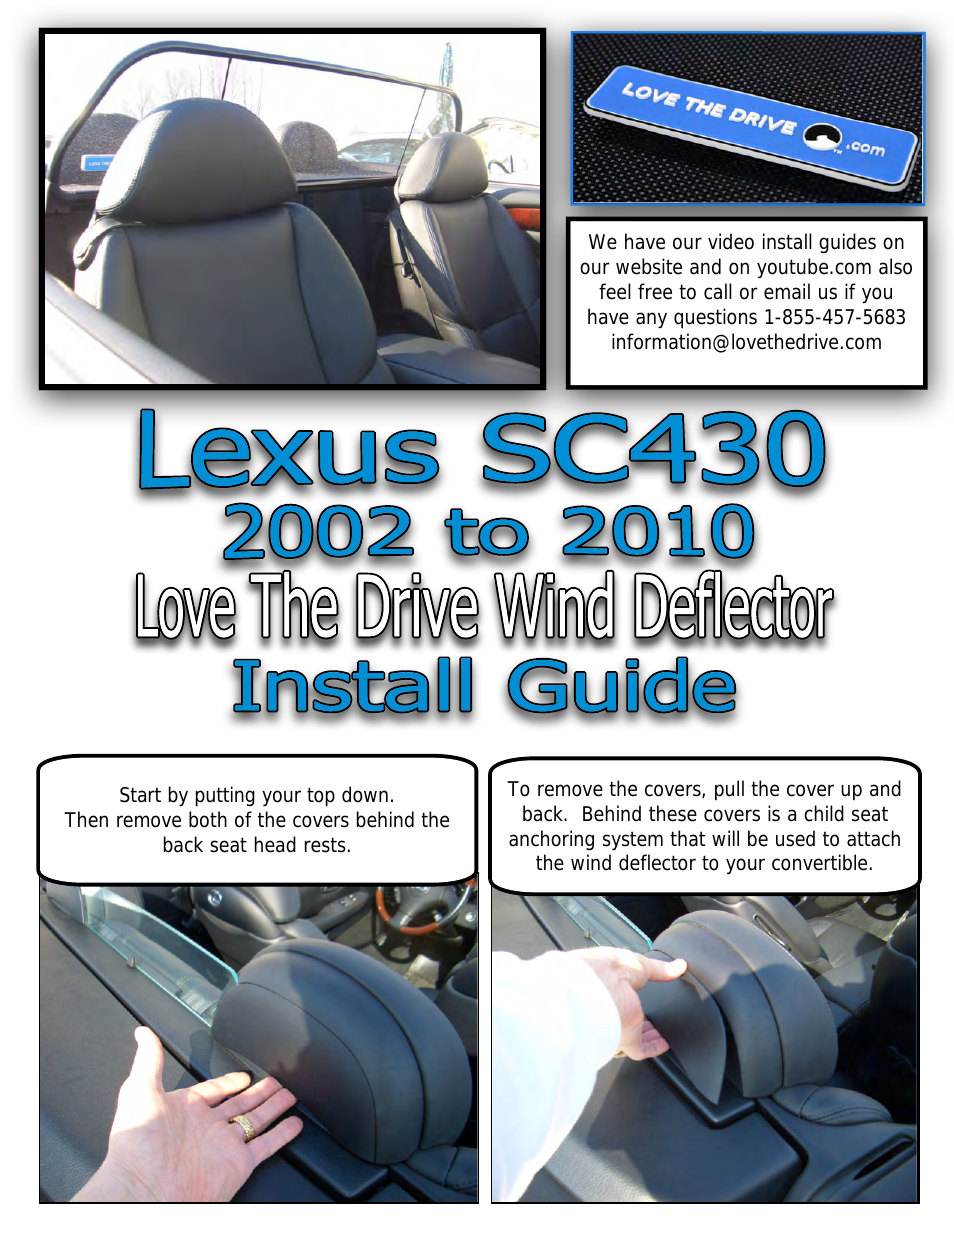 Lexus SC 430 Wind Deflector 2002 to 2010